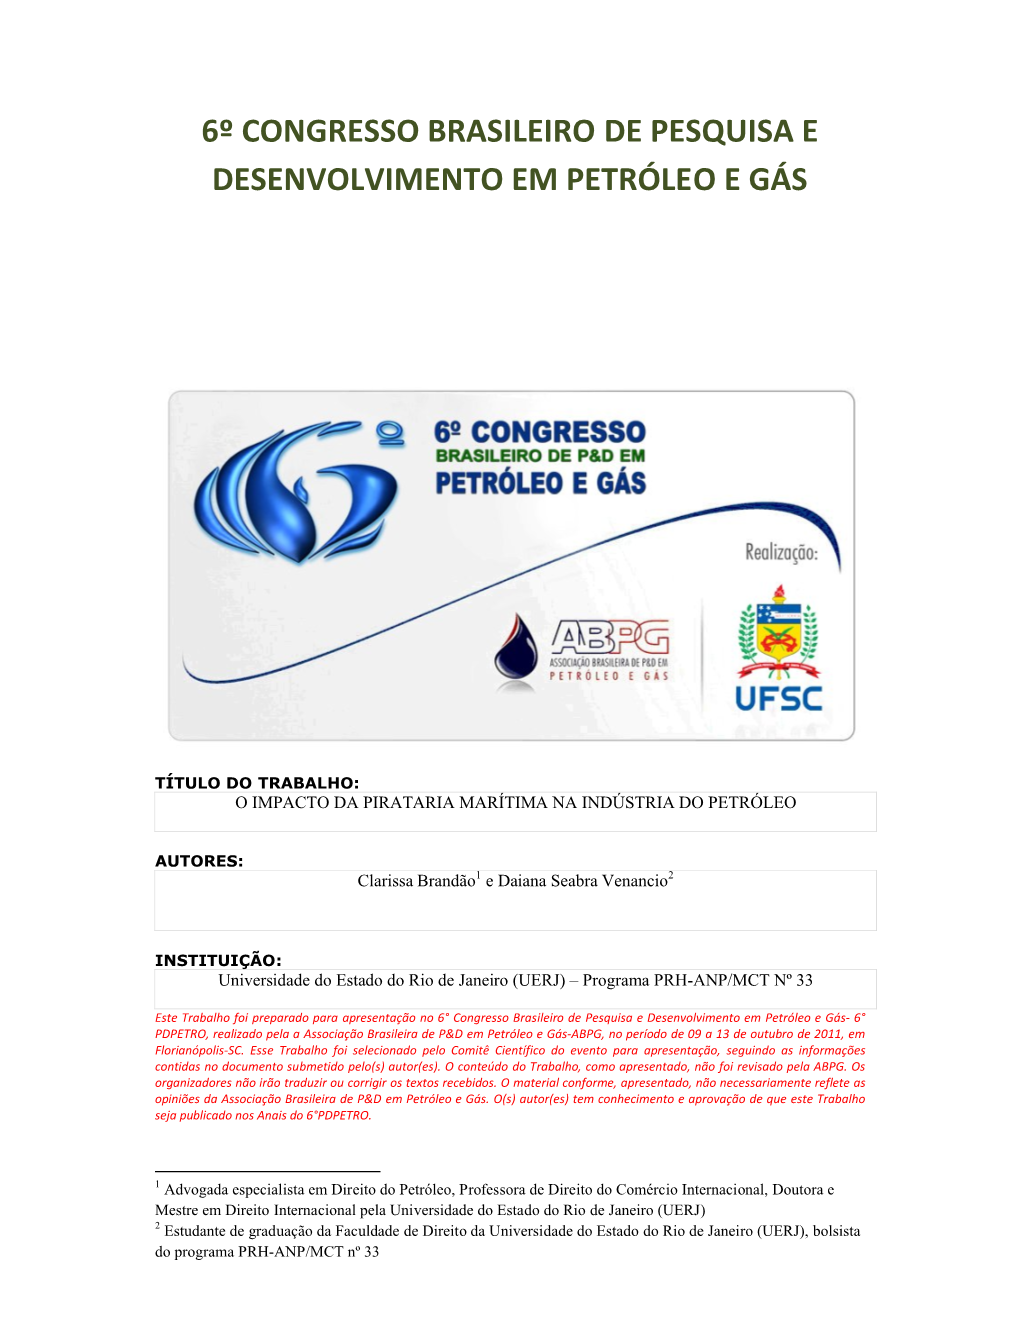 6º Congresso Brasileiro De Pesquisa E Desenvolvimento Em Petróleo E Gás